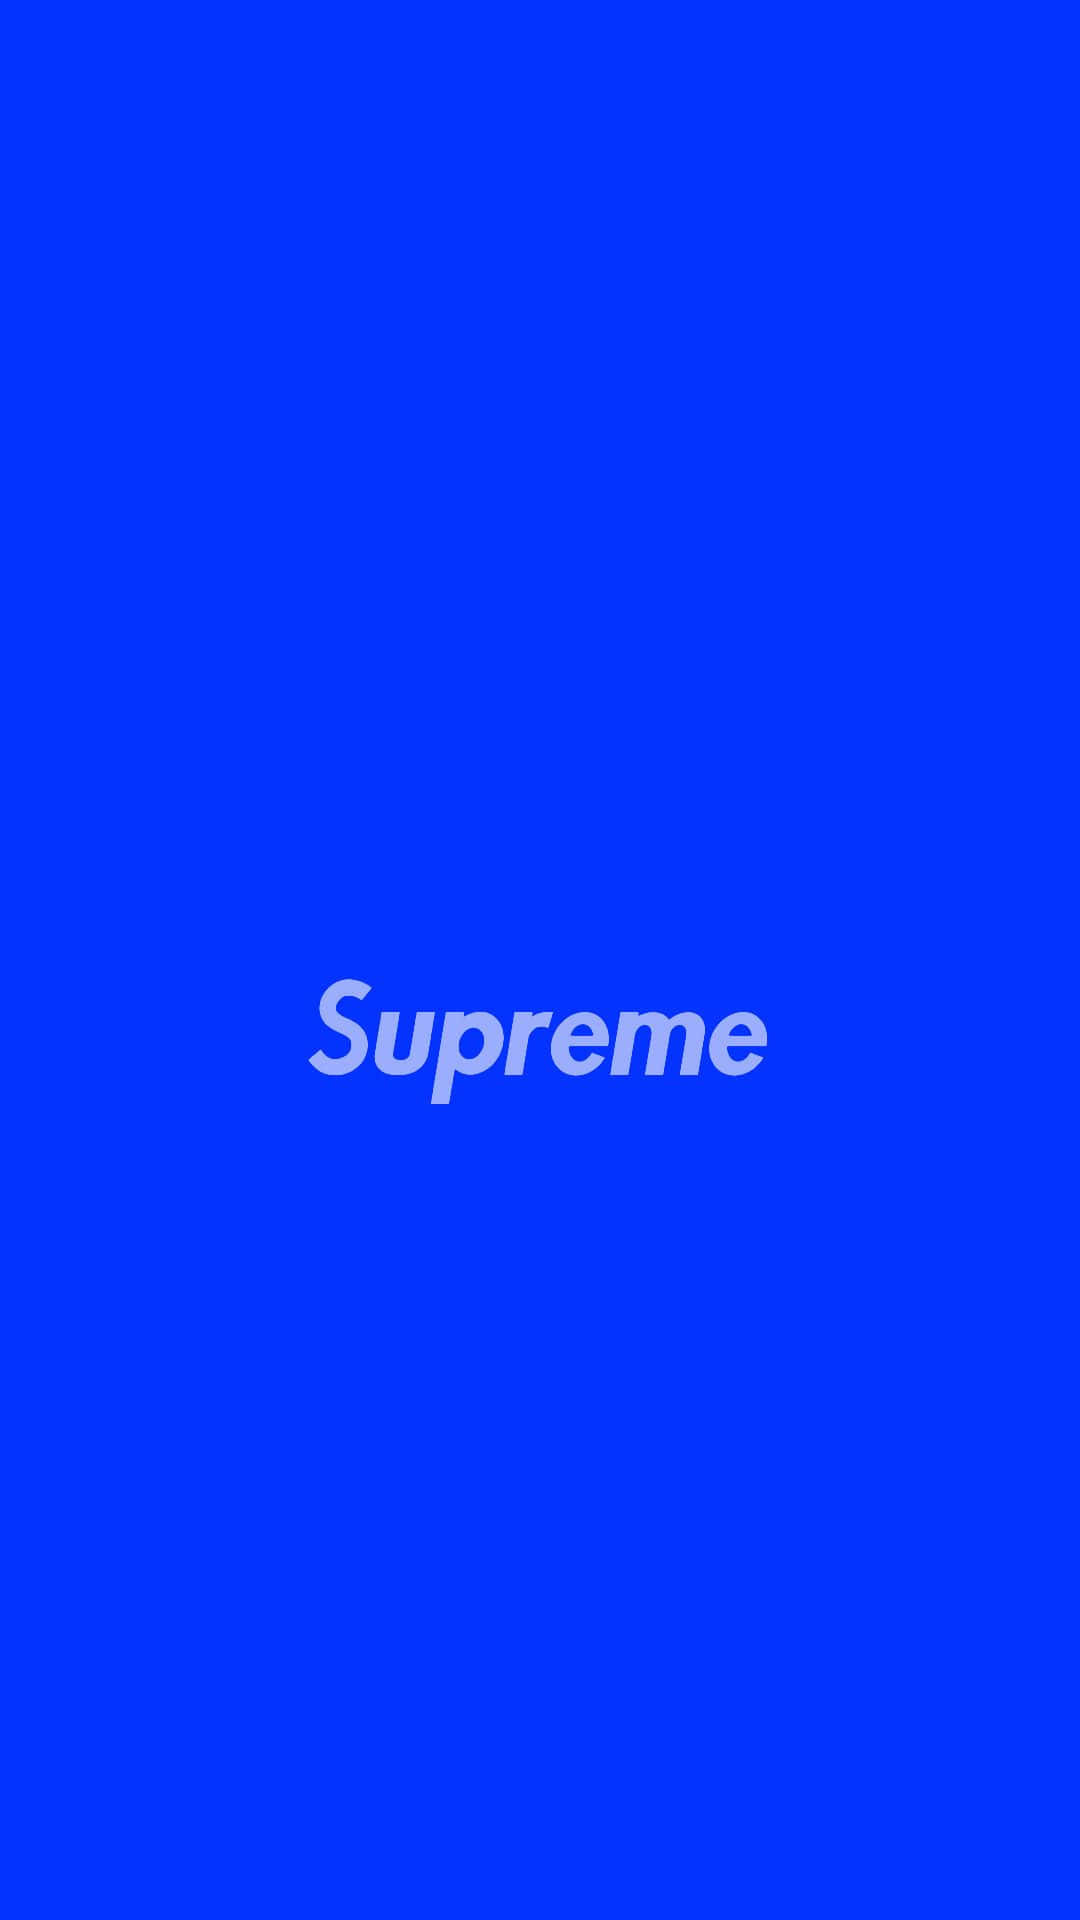 Supremelogo Auf Blauem Hintergrund Wallpaper